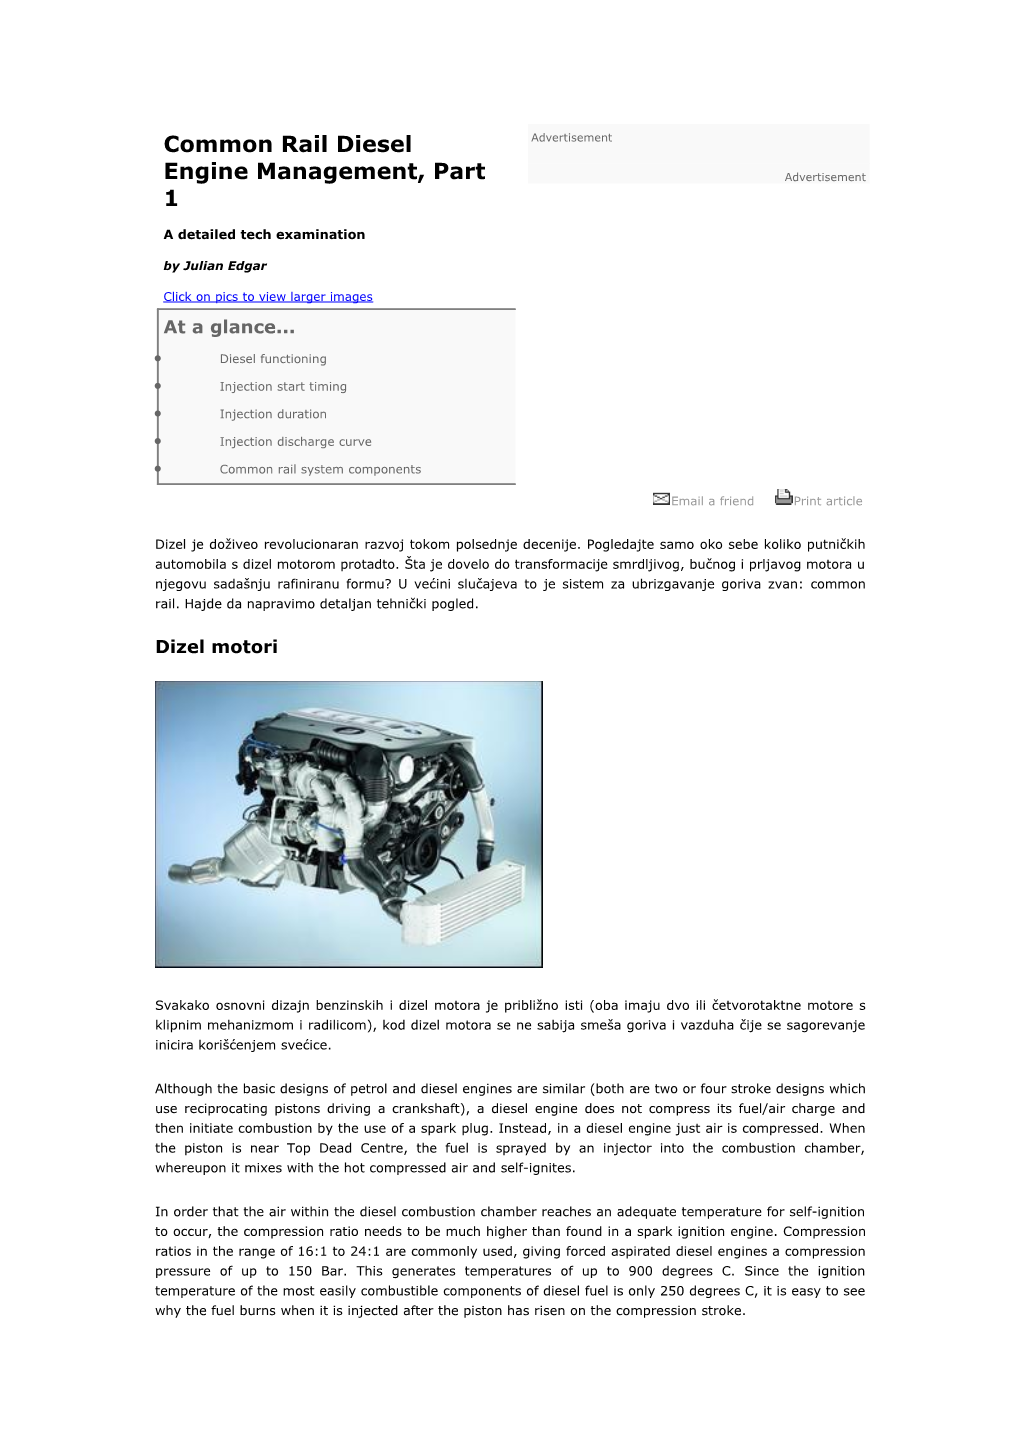 Common Rail Diesel Engine Management, Part 1